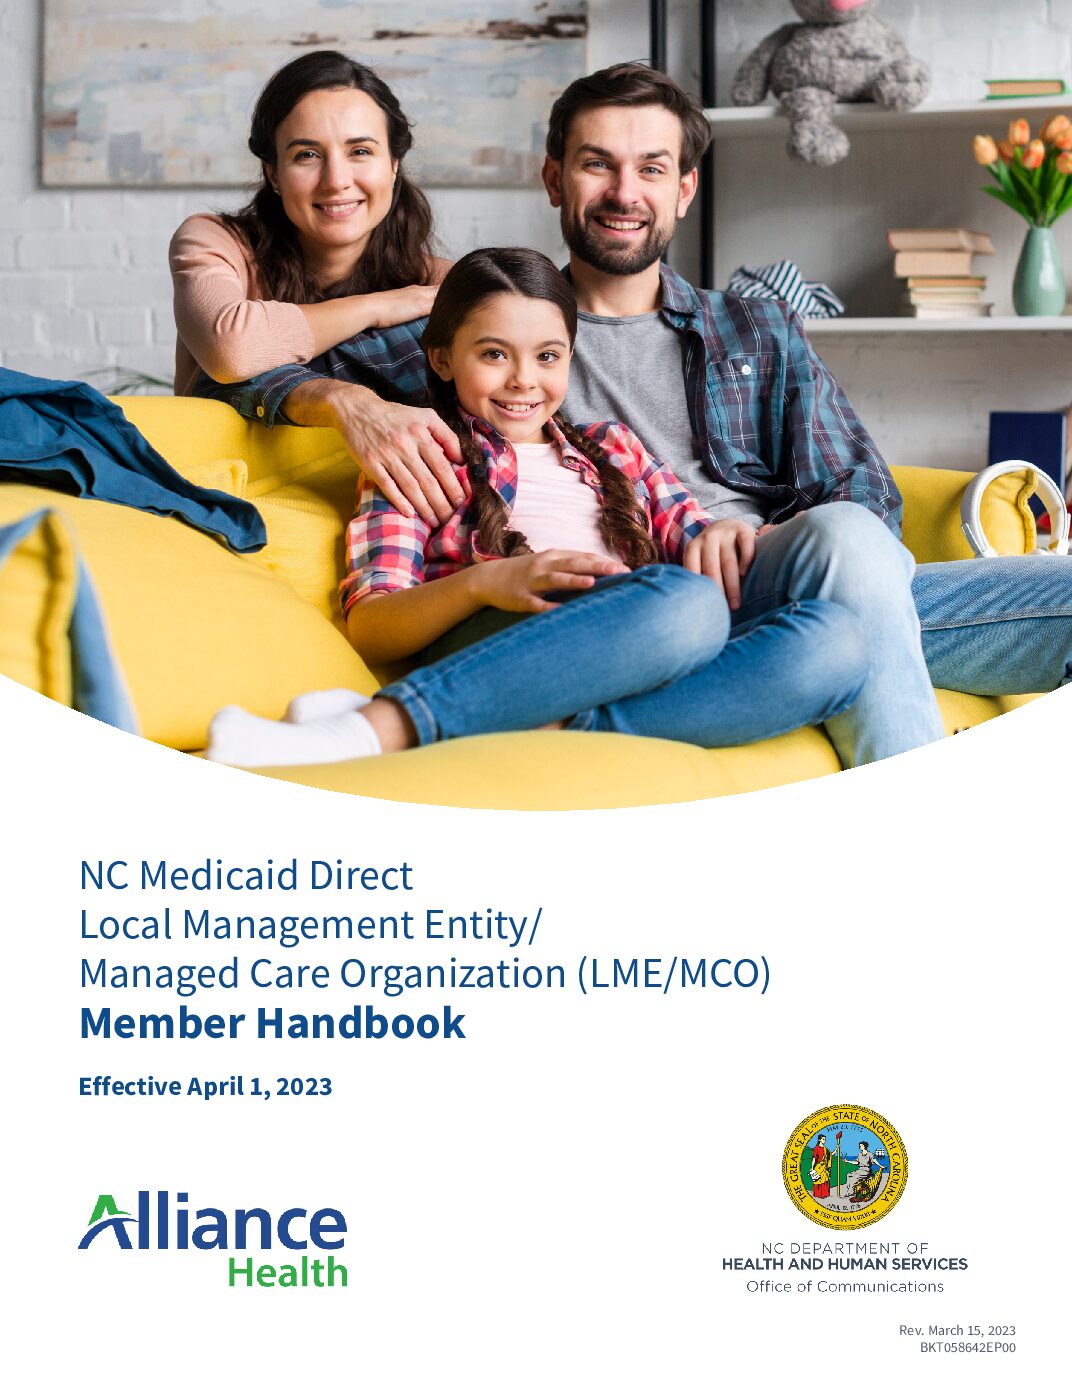 NC Medicaid Direct Member Handbook